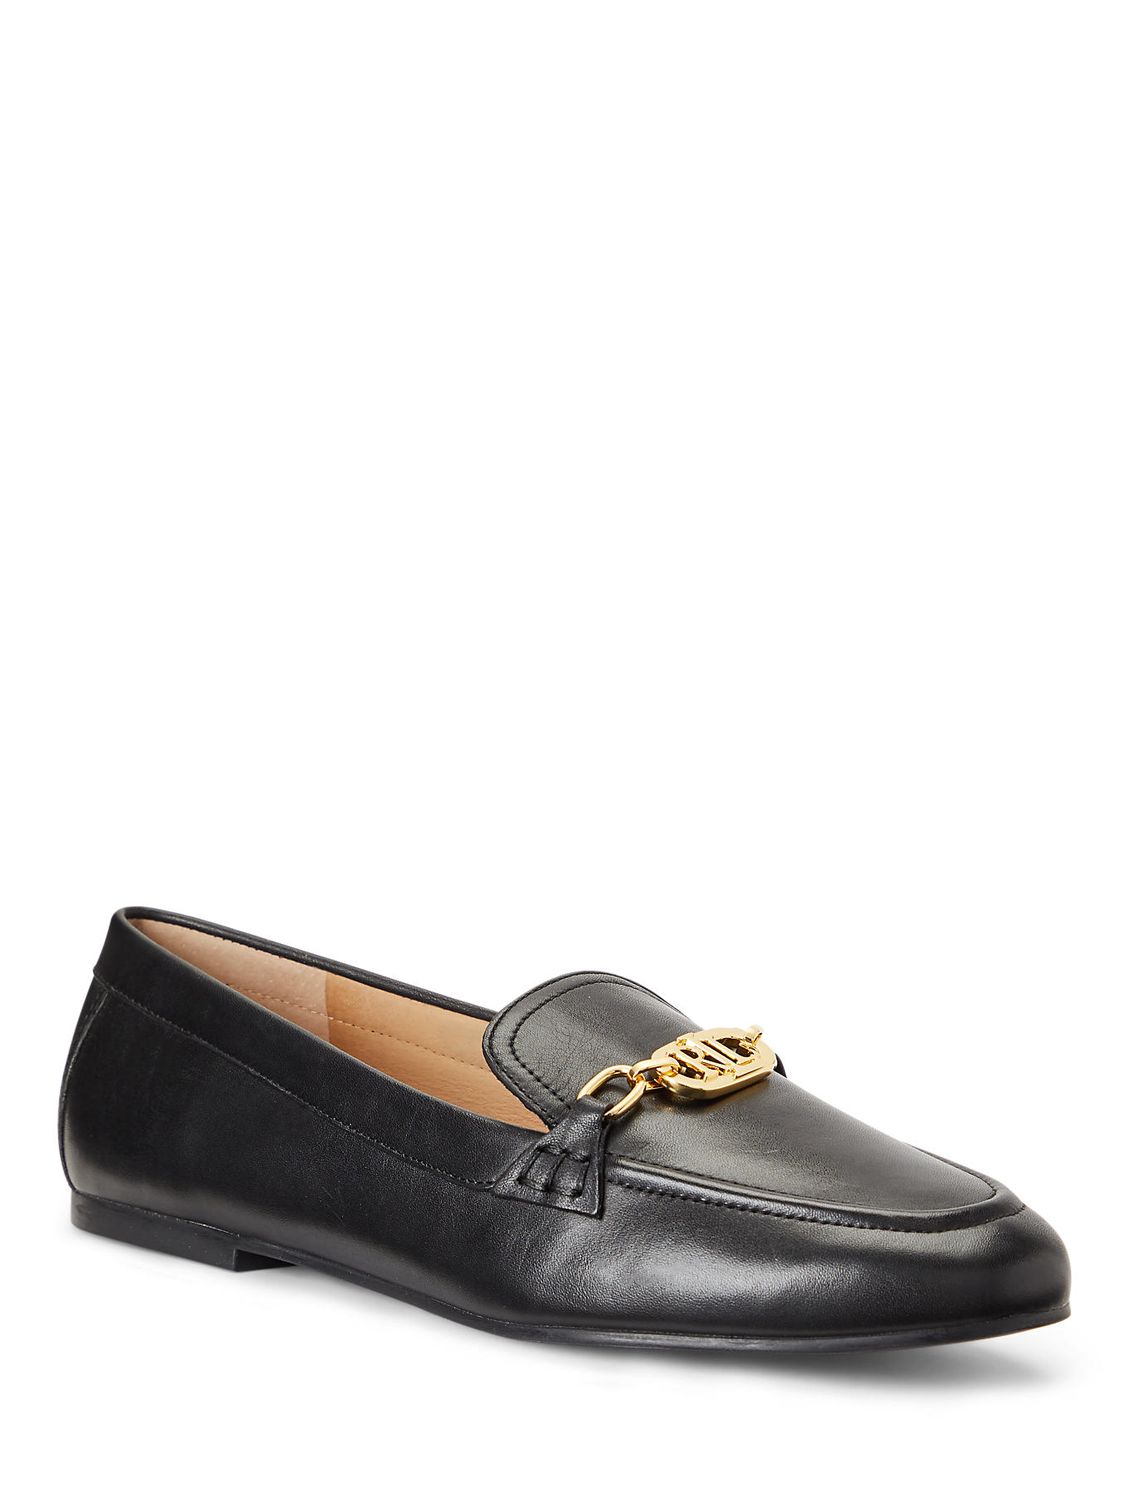 Buy Lauren Ralph Lauren Averi Leather Loafers, Black Online at johnlewis.com